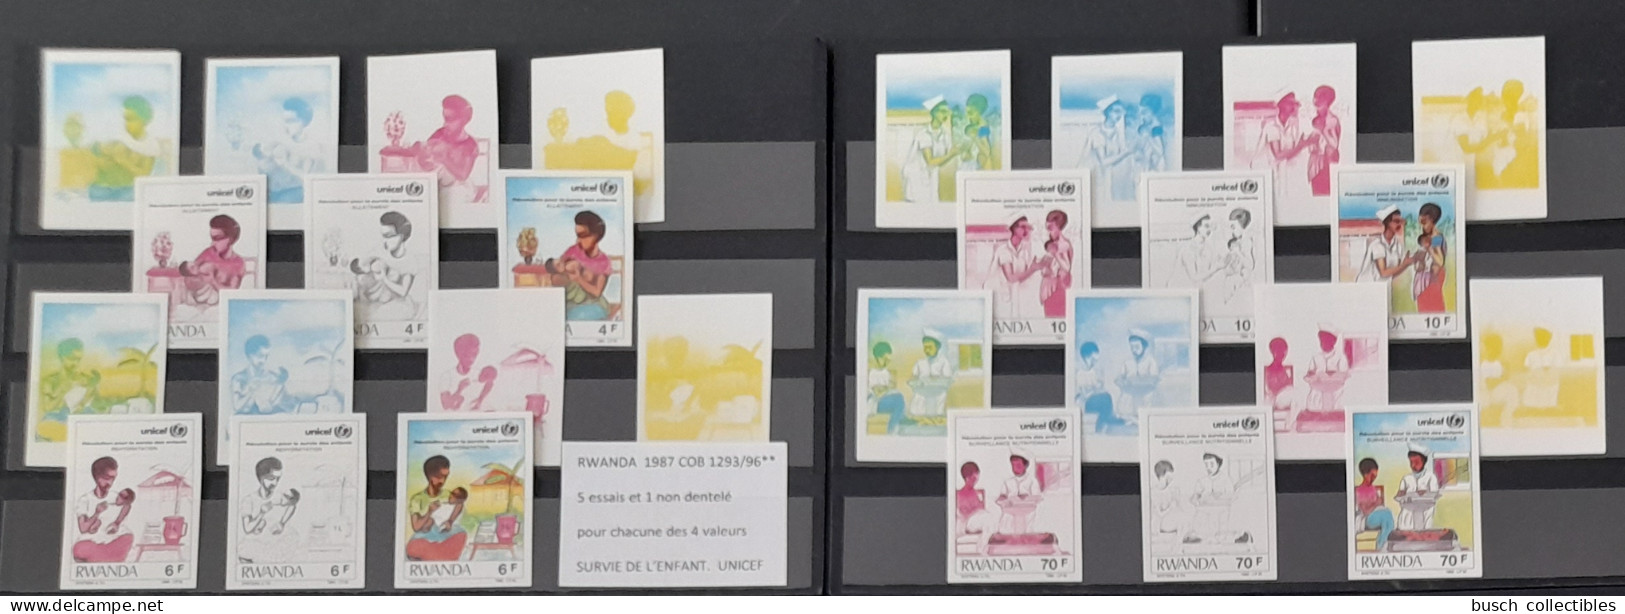 Rwanda 1987 COB 1293 - 1296 Color Proofs Essais Couleur IMPERF ND Révolution Pour Survie De L'Enfant UNICEF Child Kind - Unused Stamps